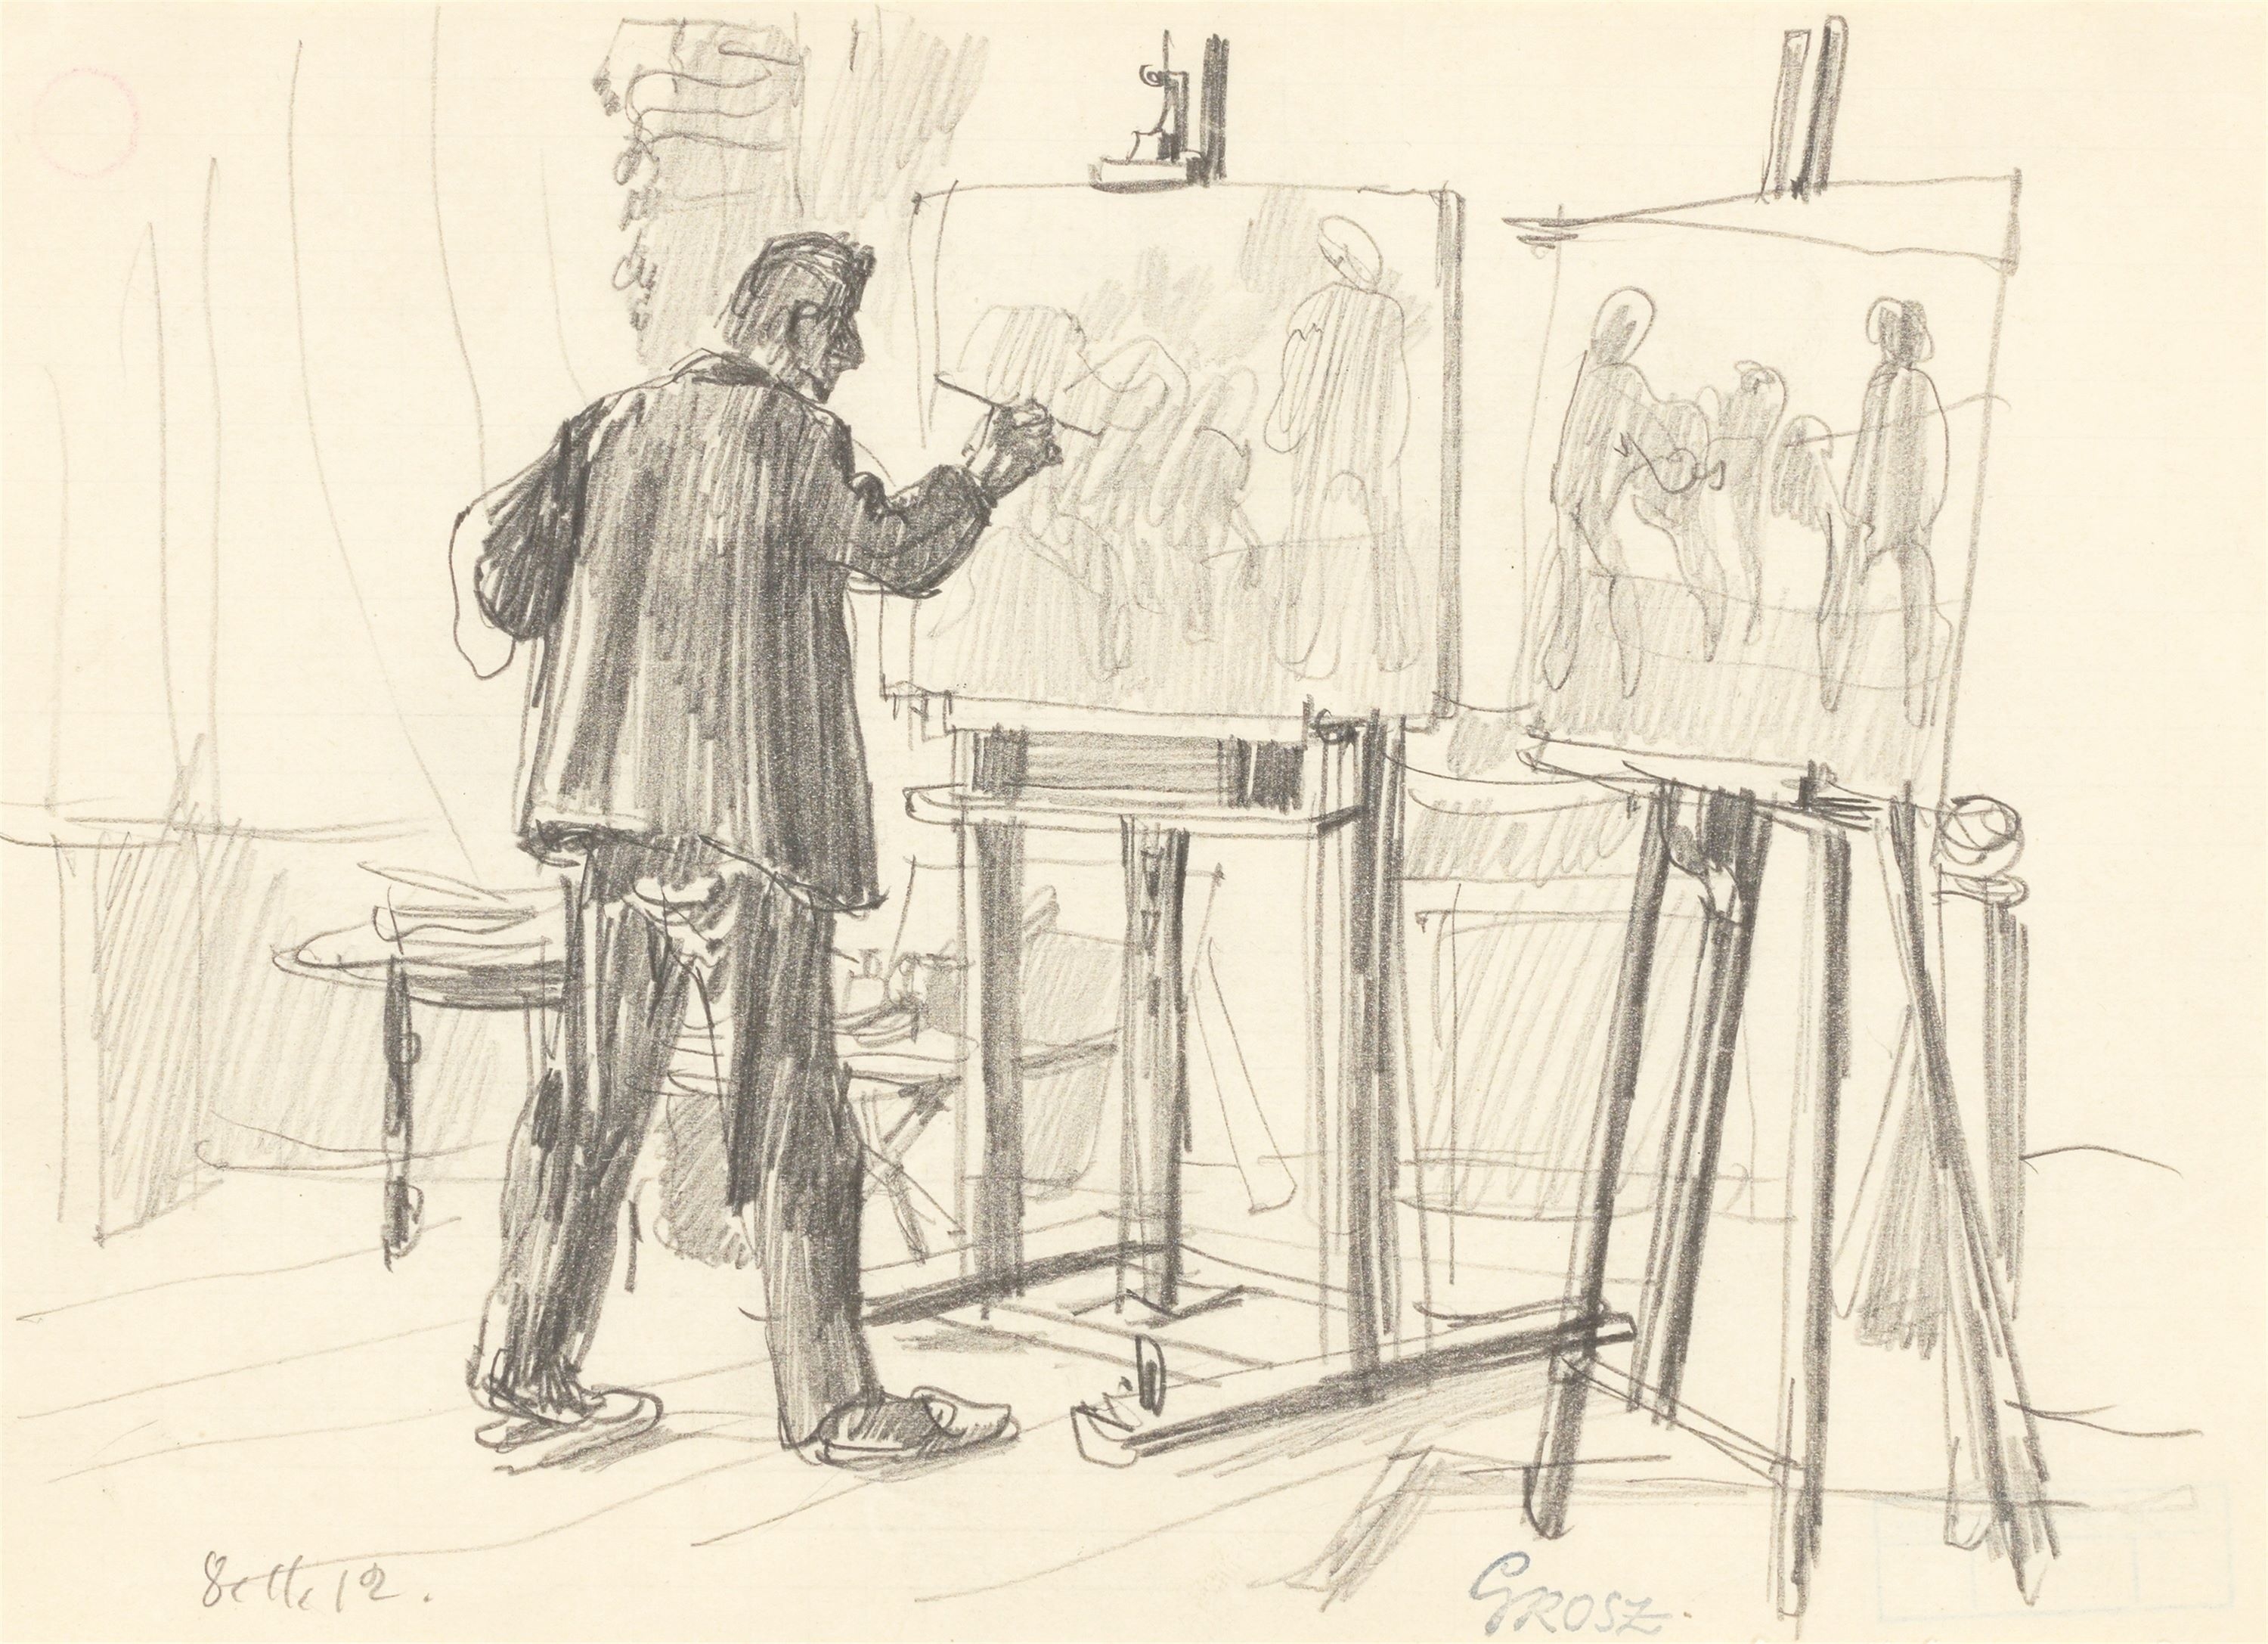 Der Maler in seinem Atelier by George Grosz, 1912